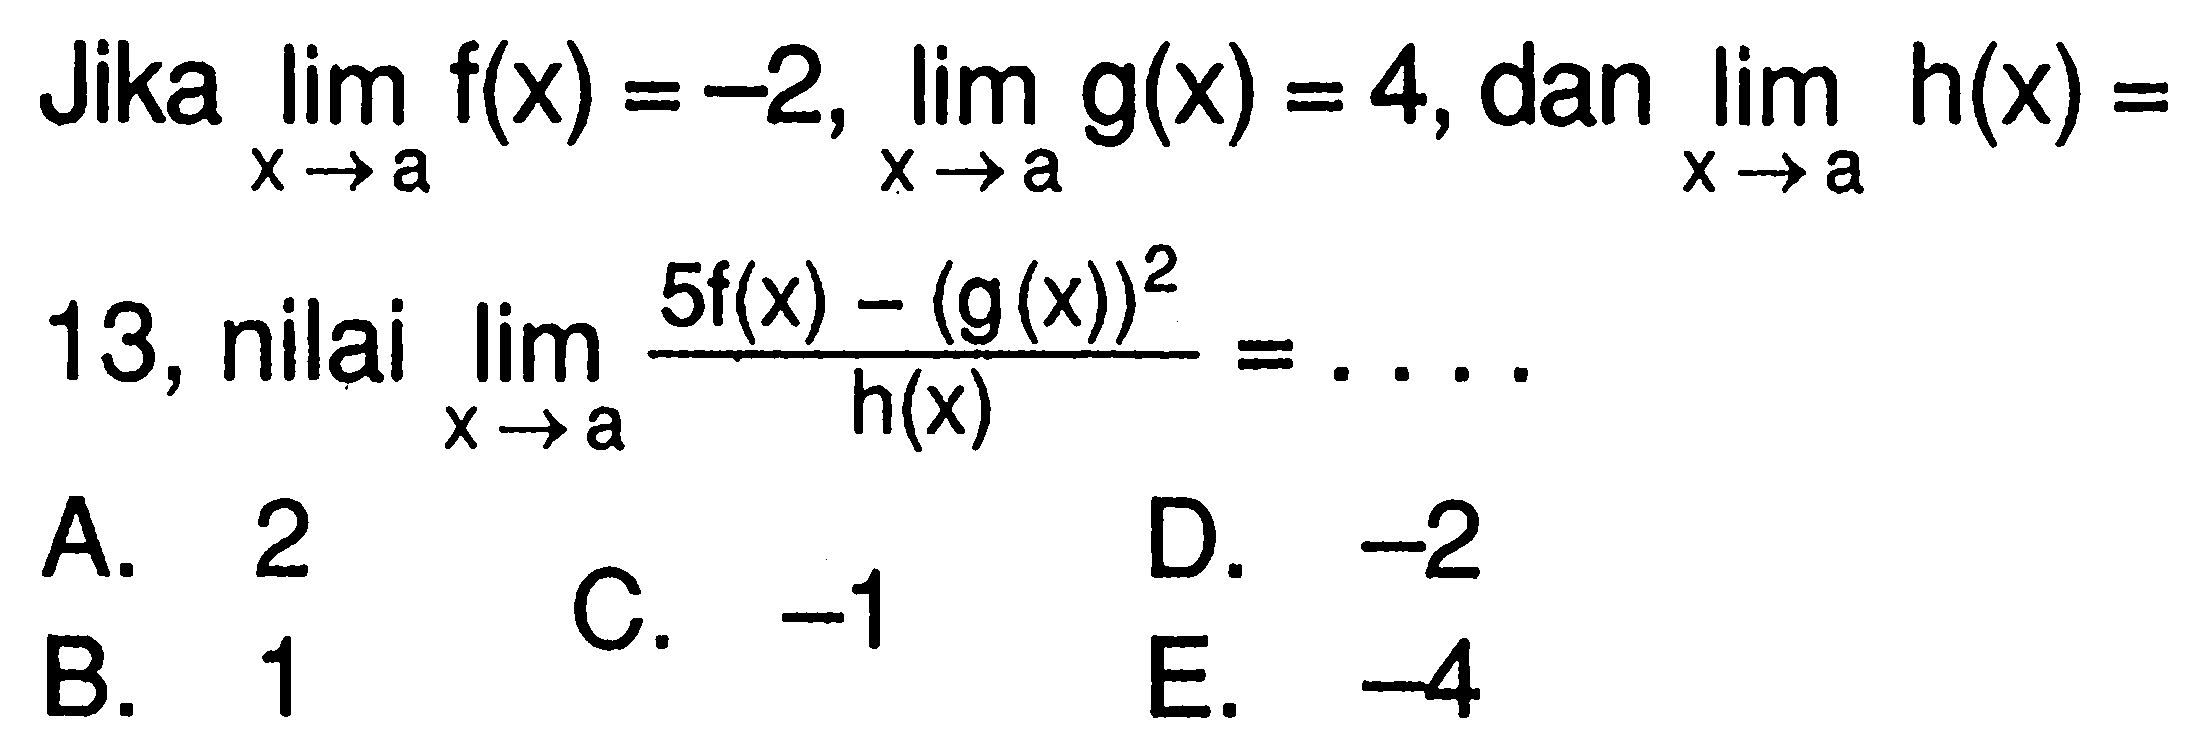 Jika lim x->a f(x)=-2, lim x->a g(x)=4, dan lim x->a h(x)=13, nilai lim x->a (5f(x)-(g(x))^2/h(x)=.... 